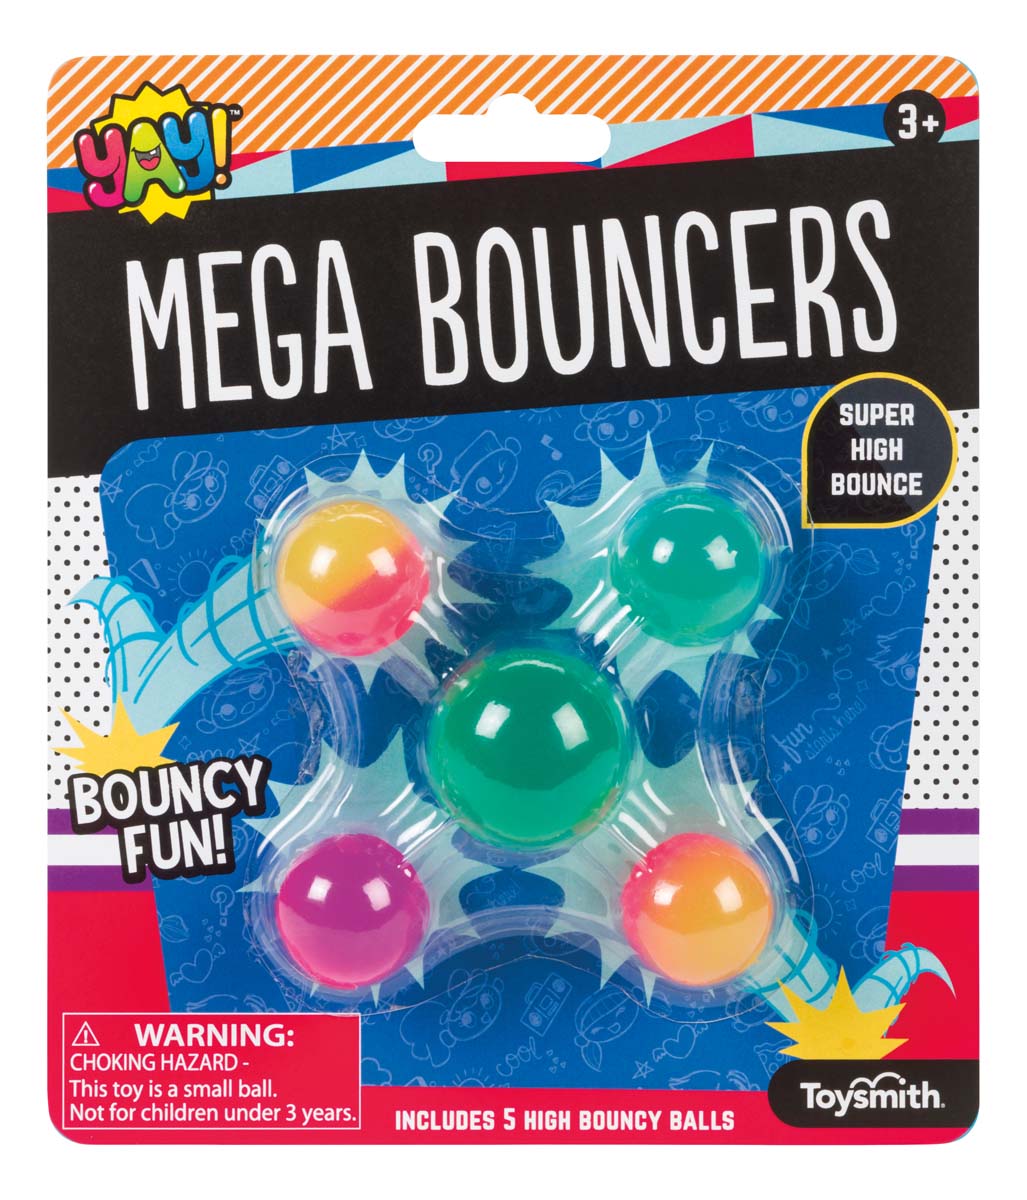 YAY! Mega Bouncers